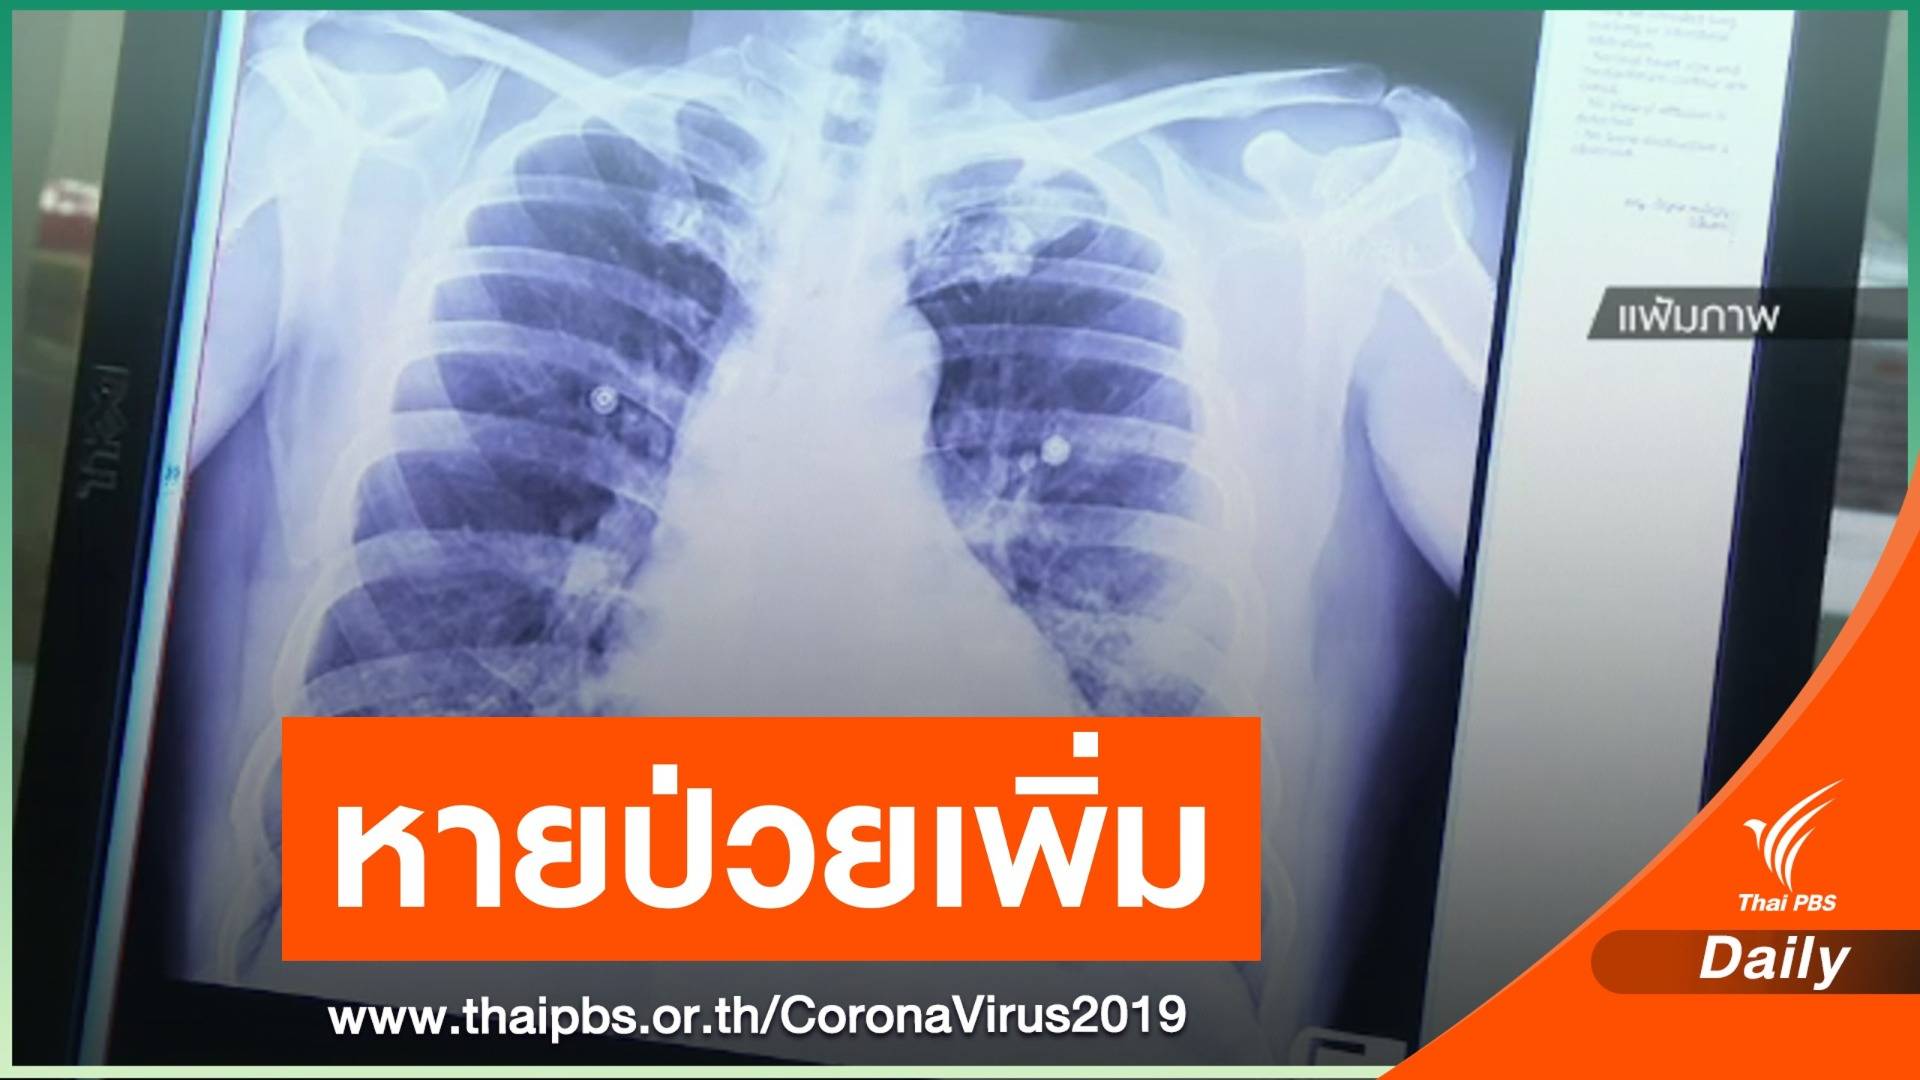 ข่าวดี! คนไทยติดเชื้อ COVID-19 หายป่วยกลับบ้านเพิ่ม 1 คน